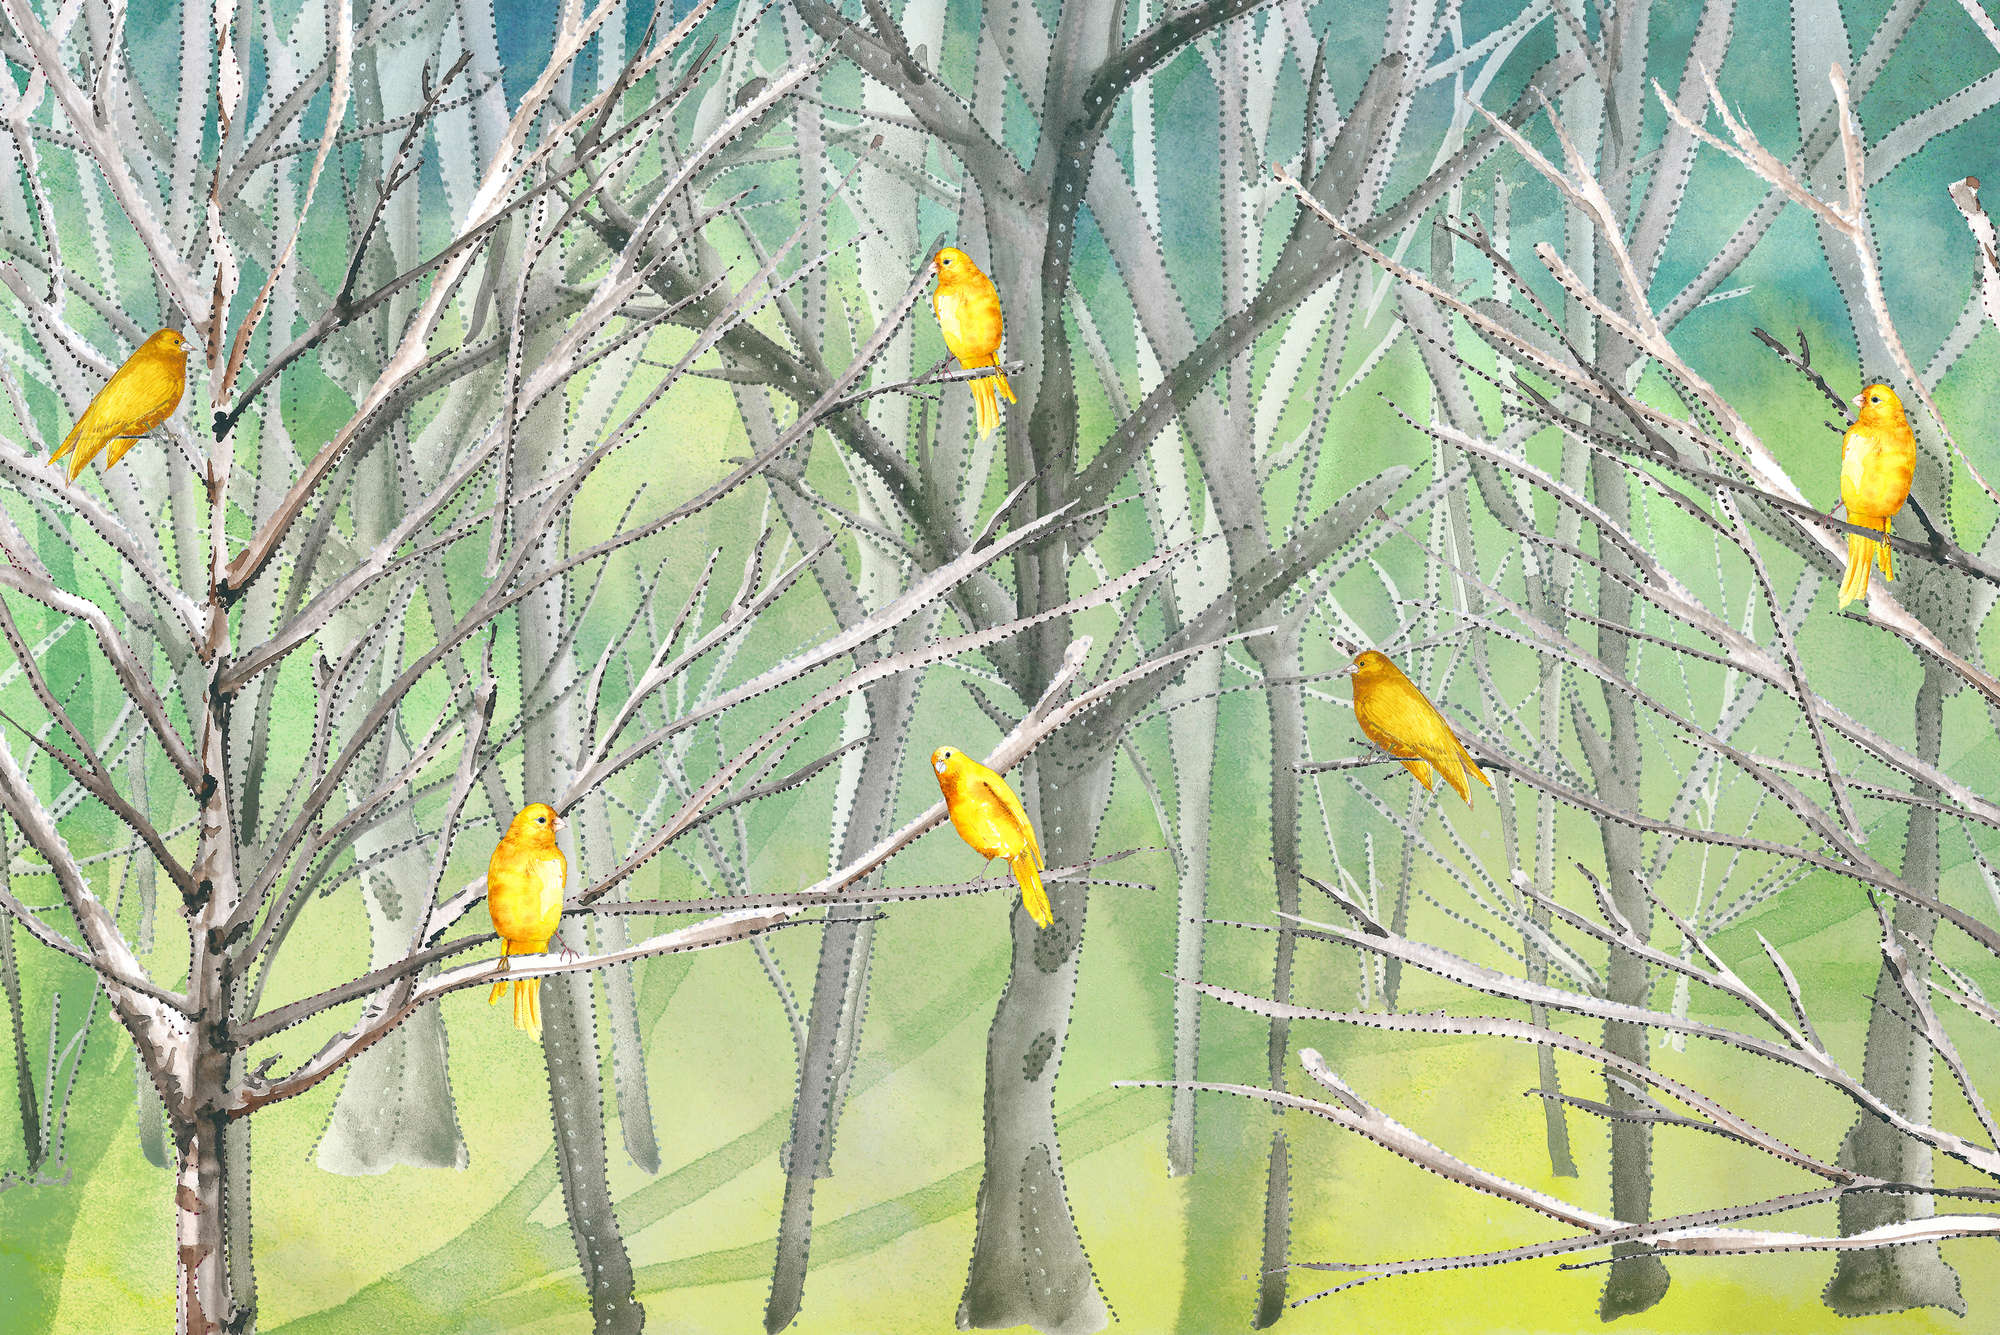             Papier peint panoramique forêt avec des oiseaux en bleu et jaune sur intissé structuré
        